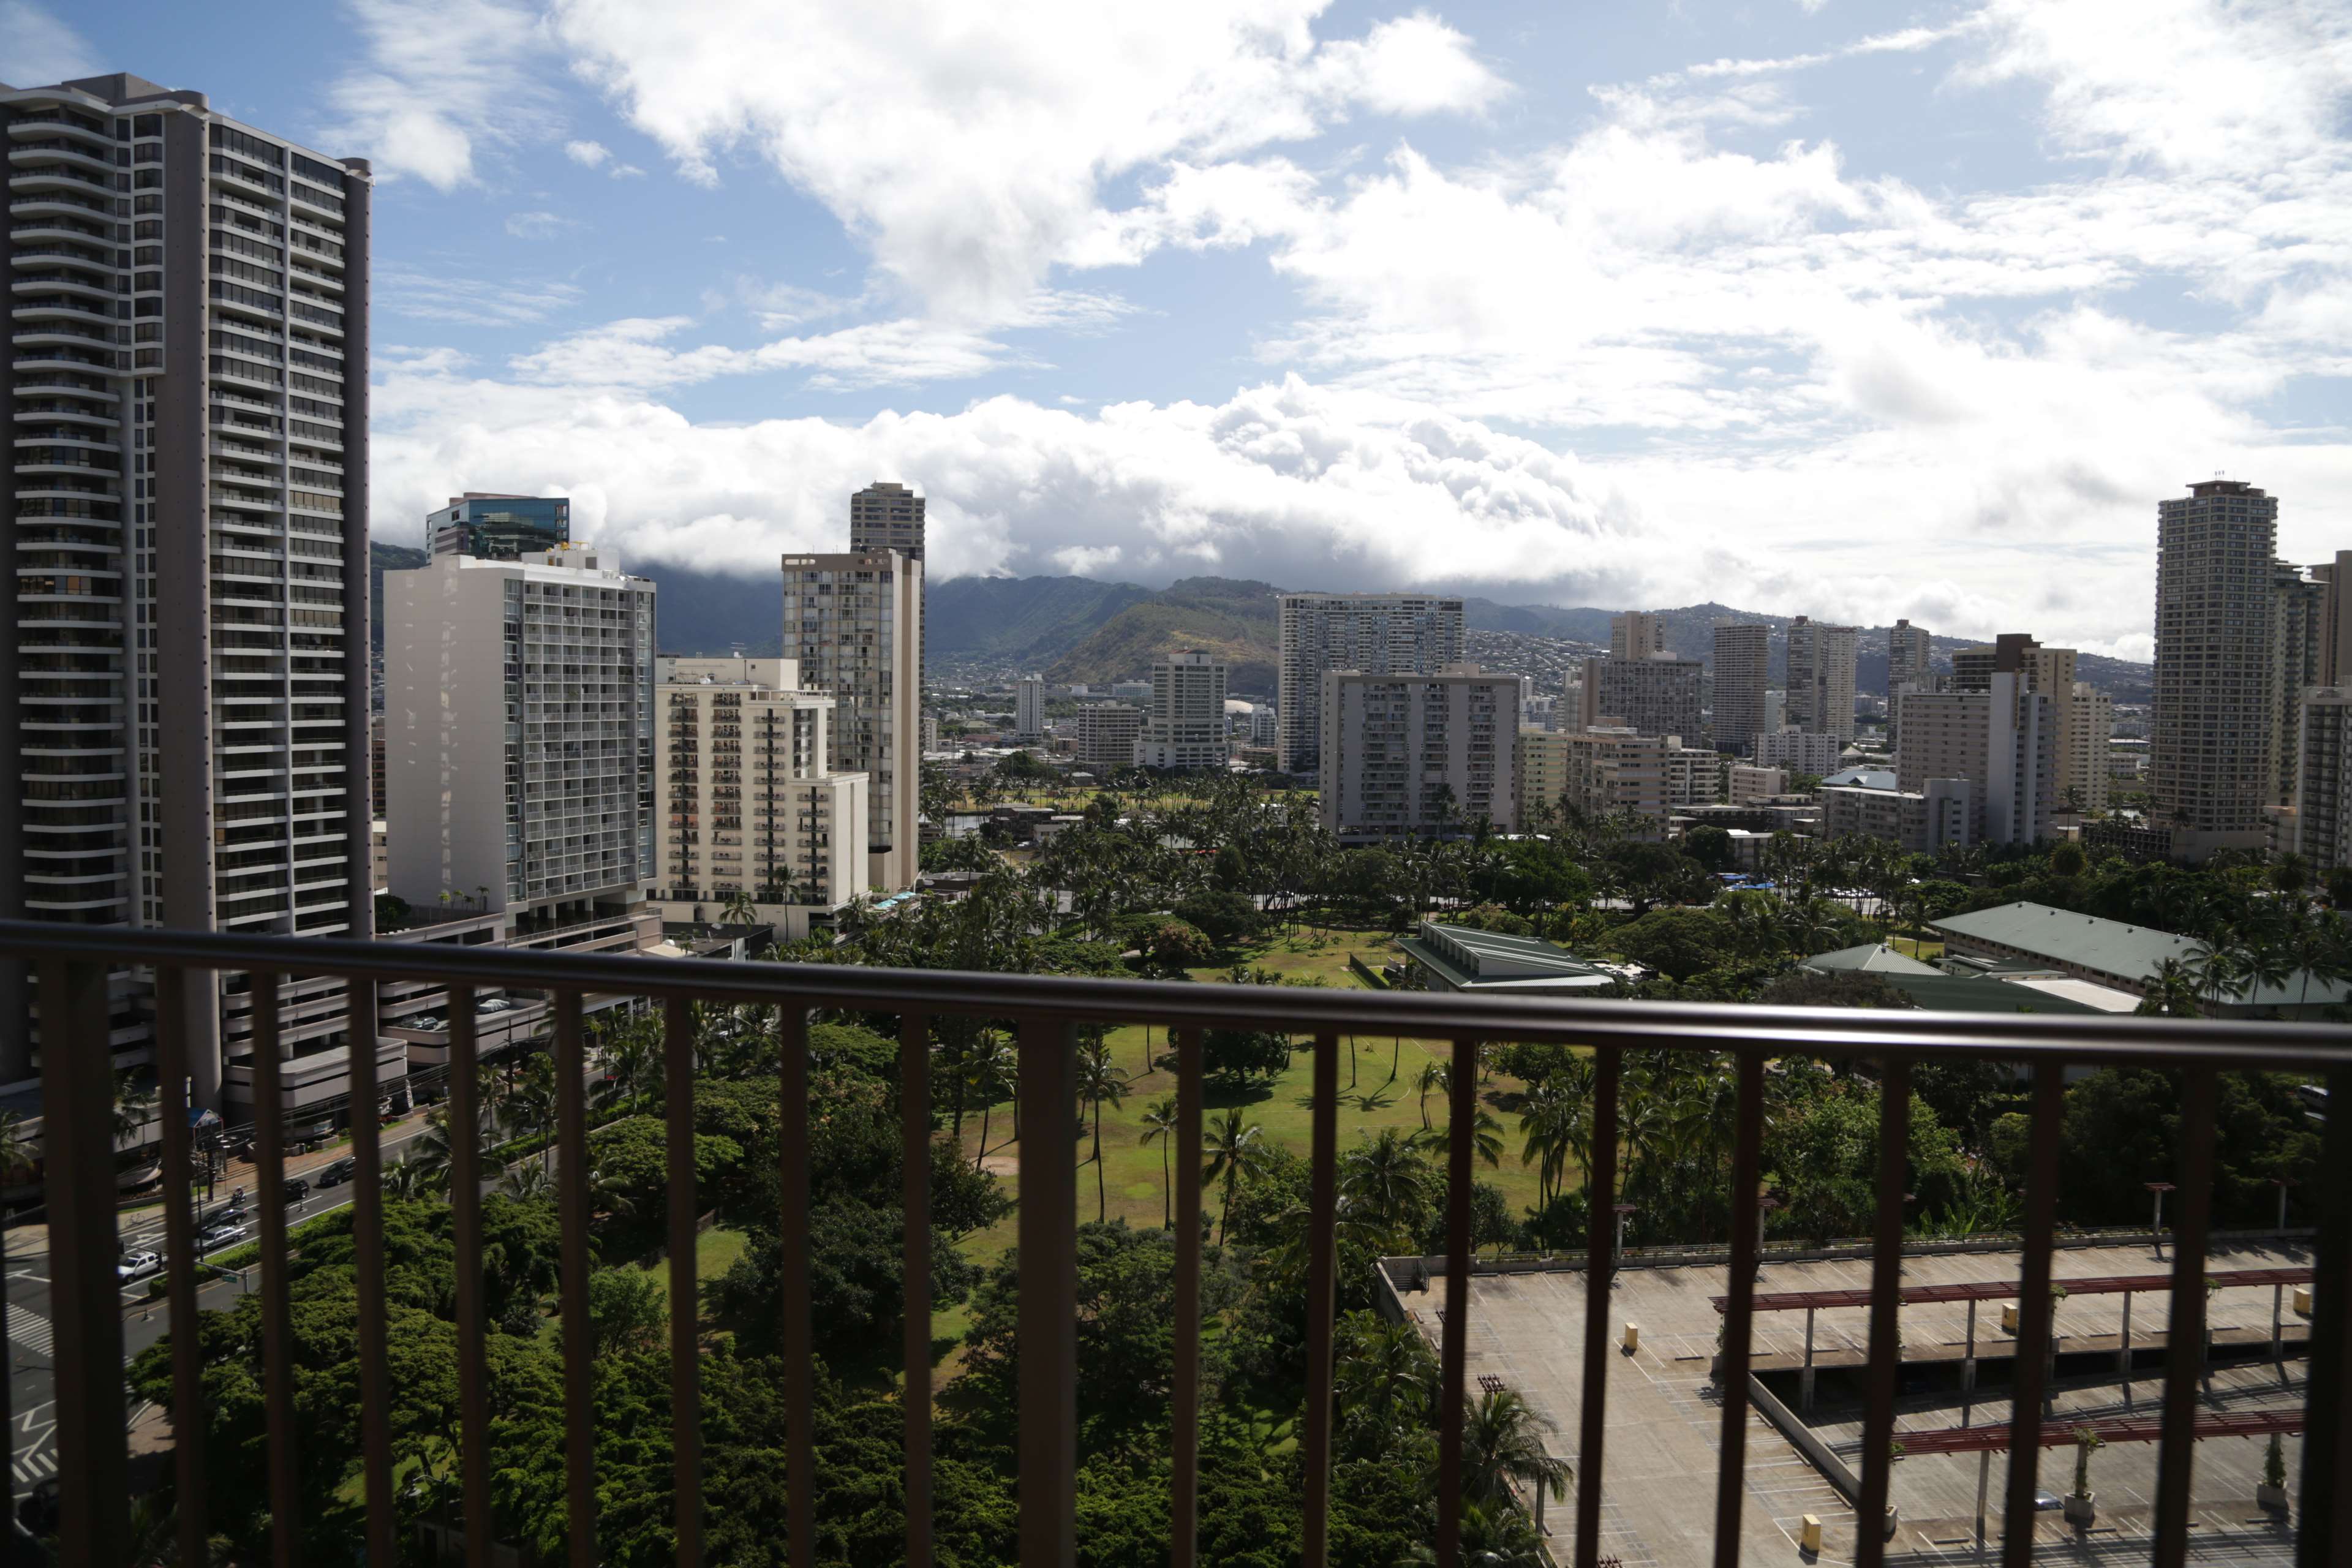 Hilton Hawaiian Village Waikiki Beach Resort Photo